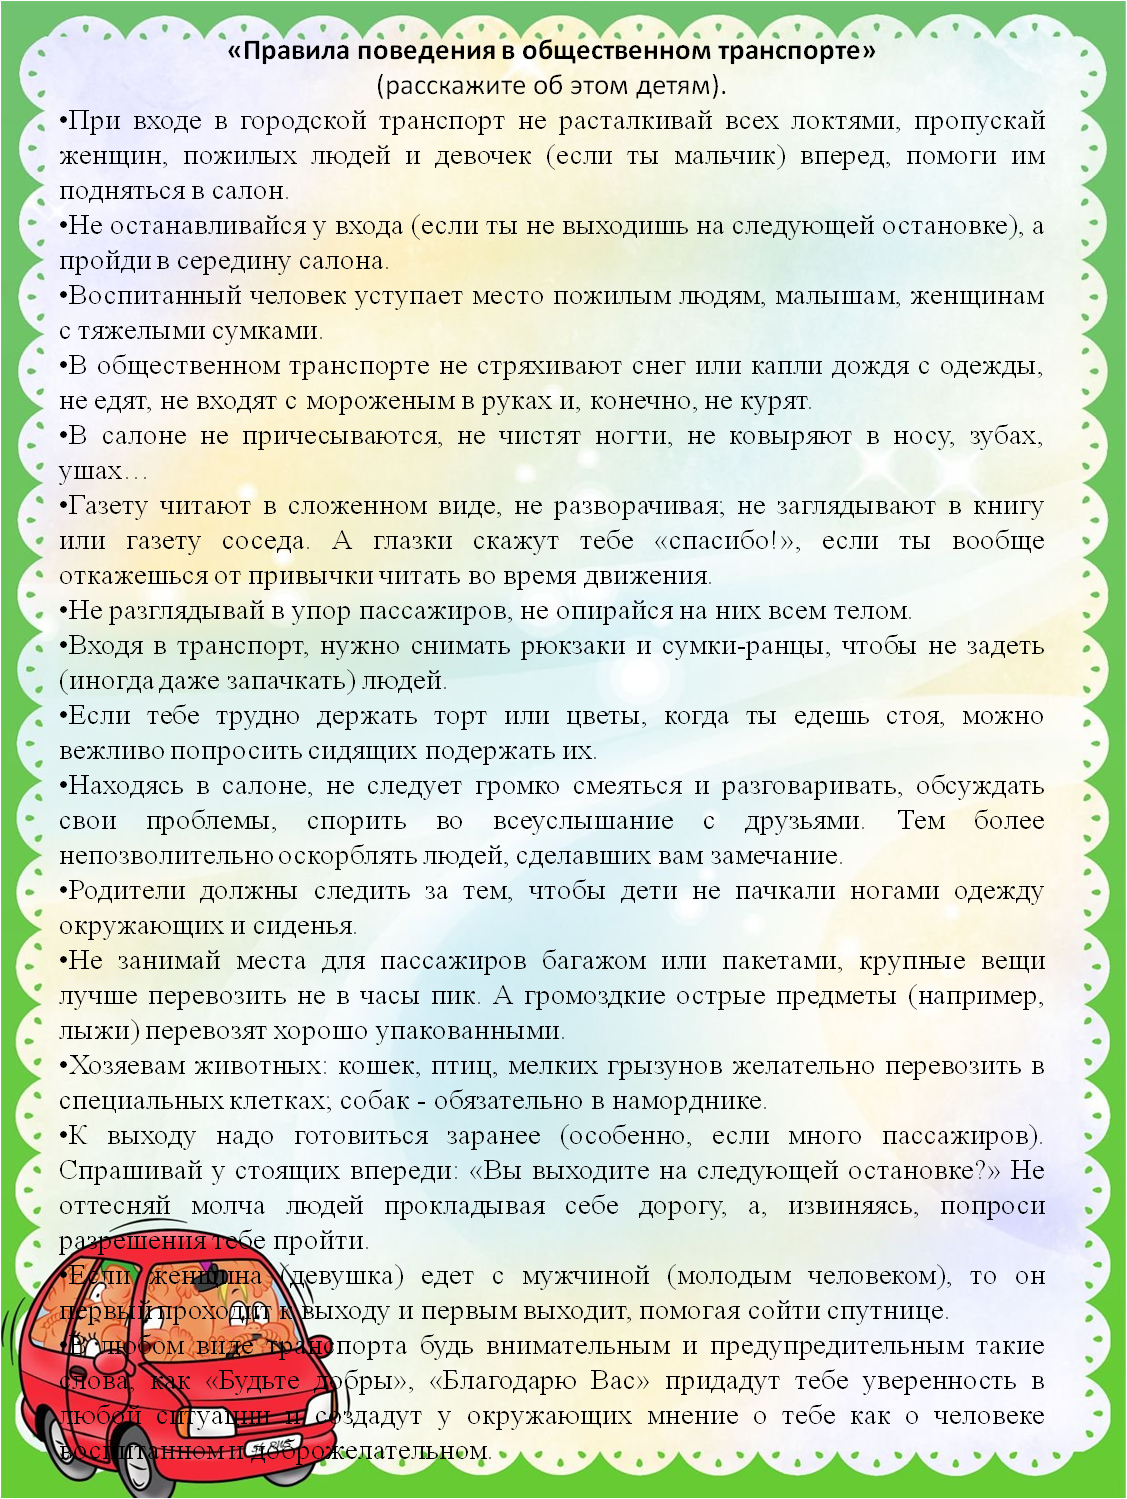 /tinybrowser/14_pedagogiskai_kopilka/sitkina_sa/pravila-povedeniya-v-obschestvennom-transporte.png